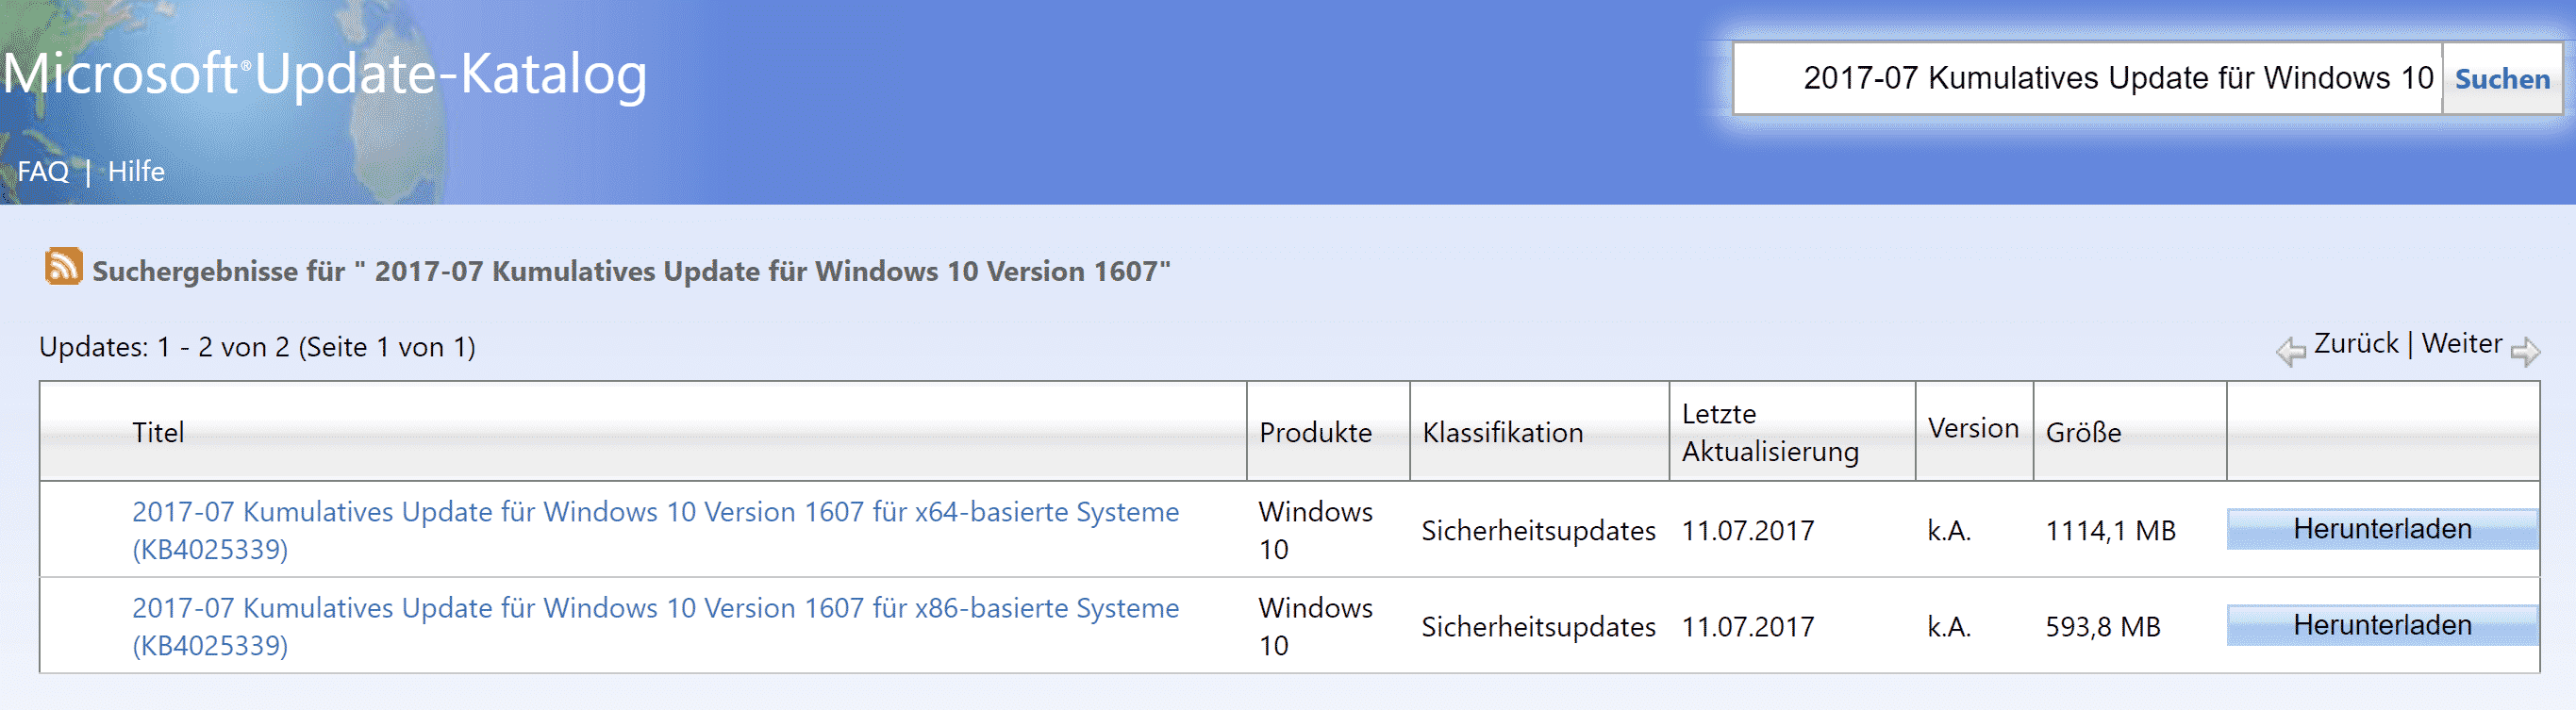 2017-07 Kumulatives Update für Windows 10 Version 1607